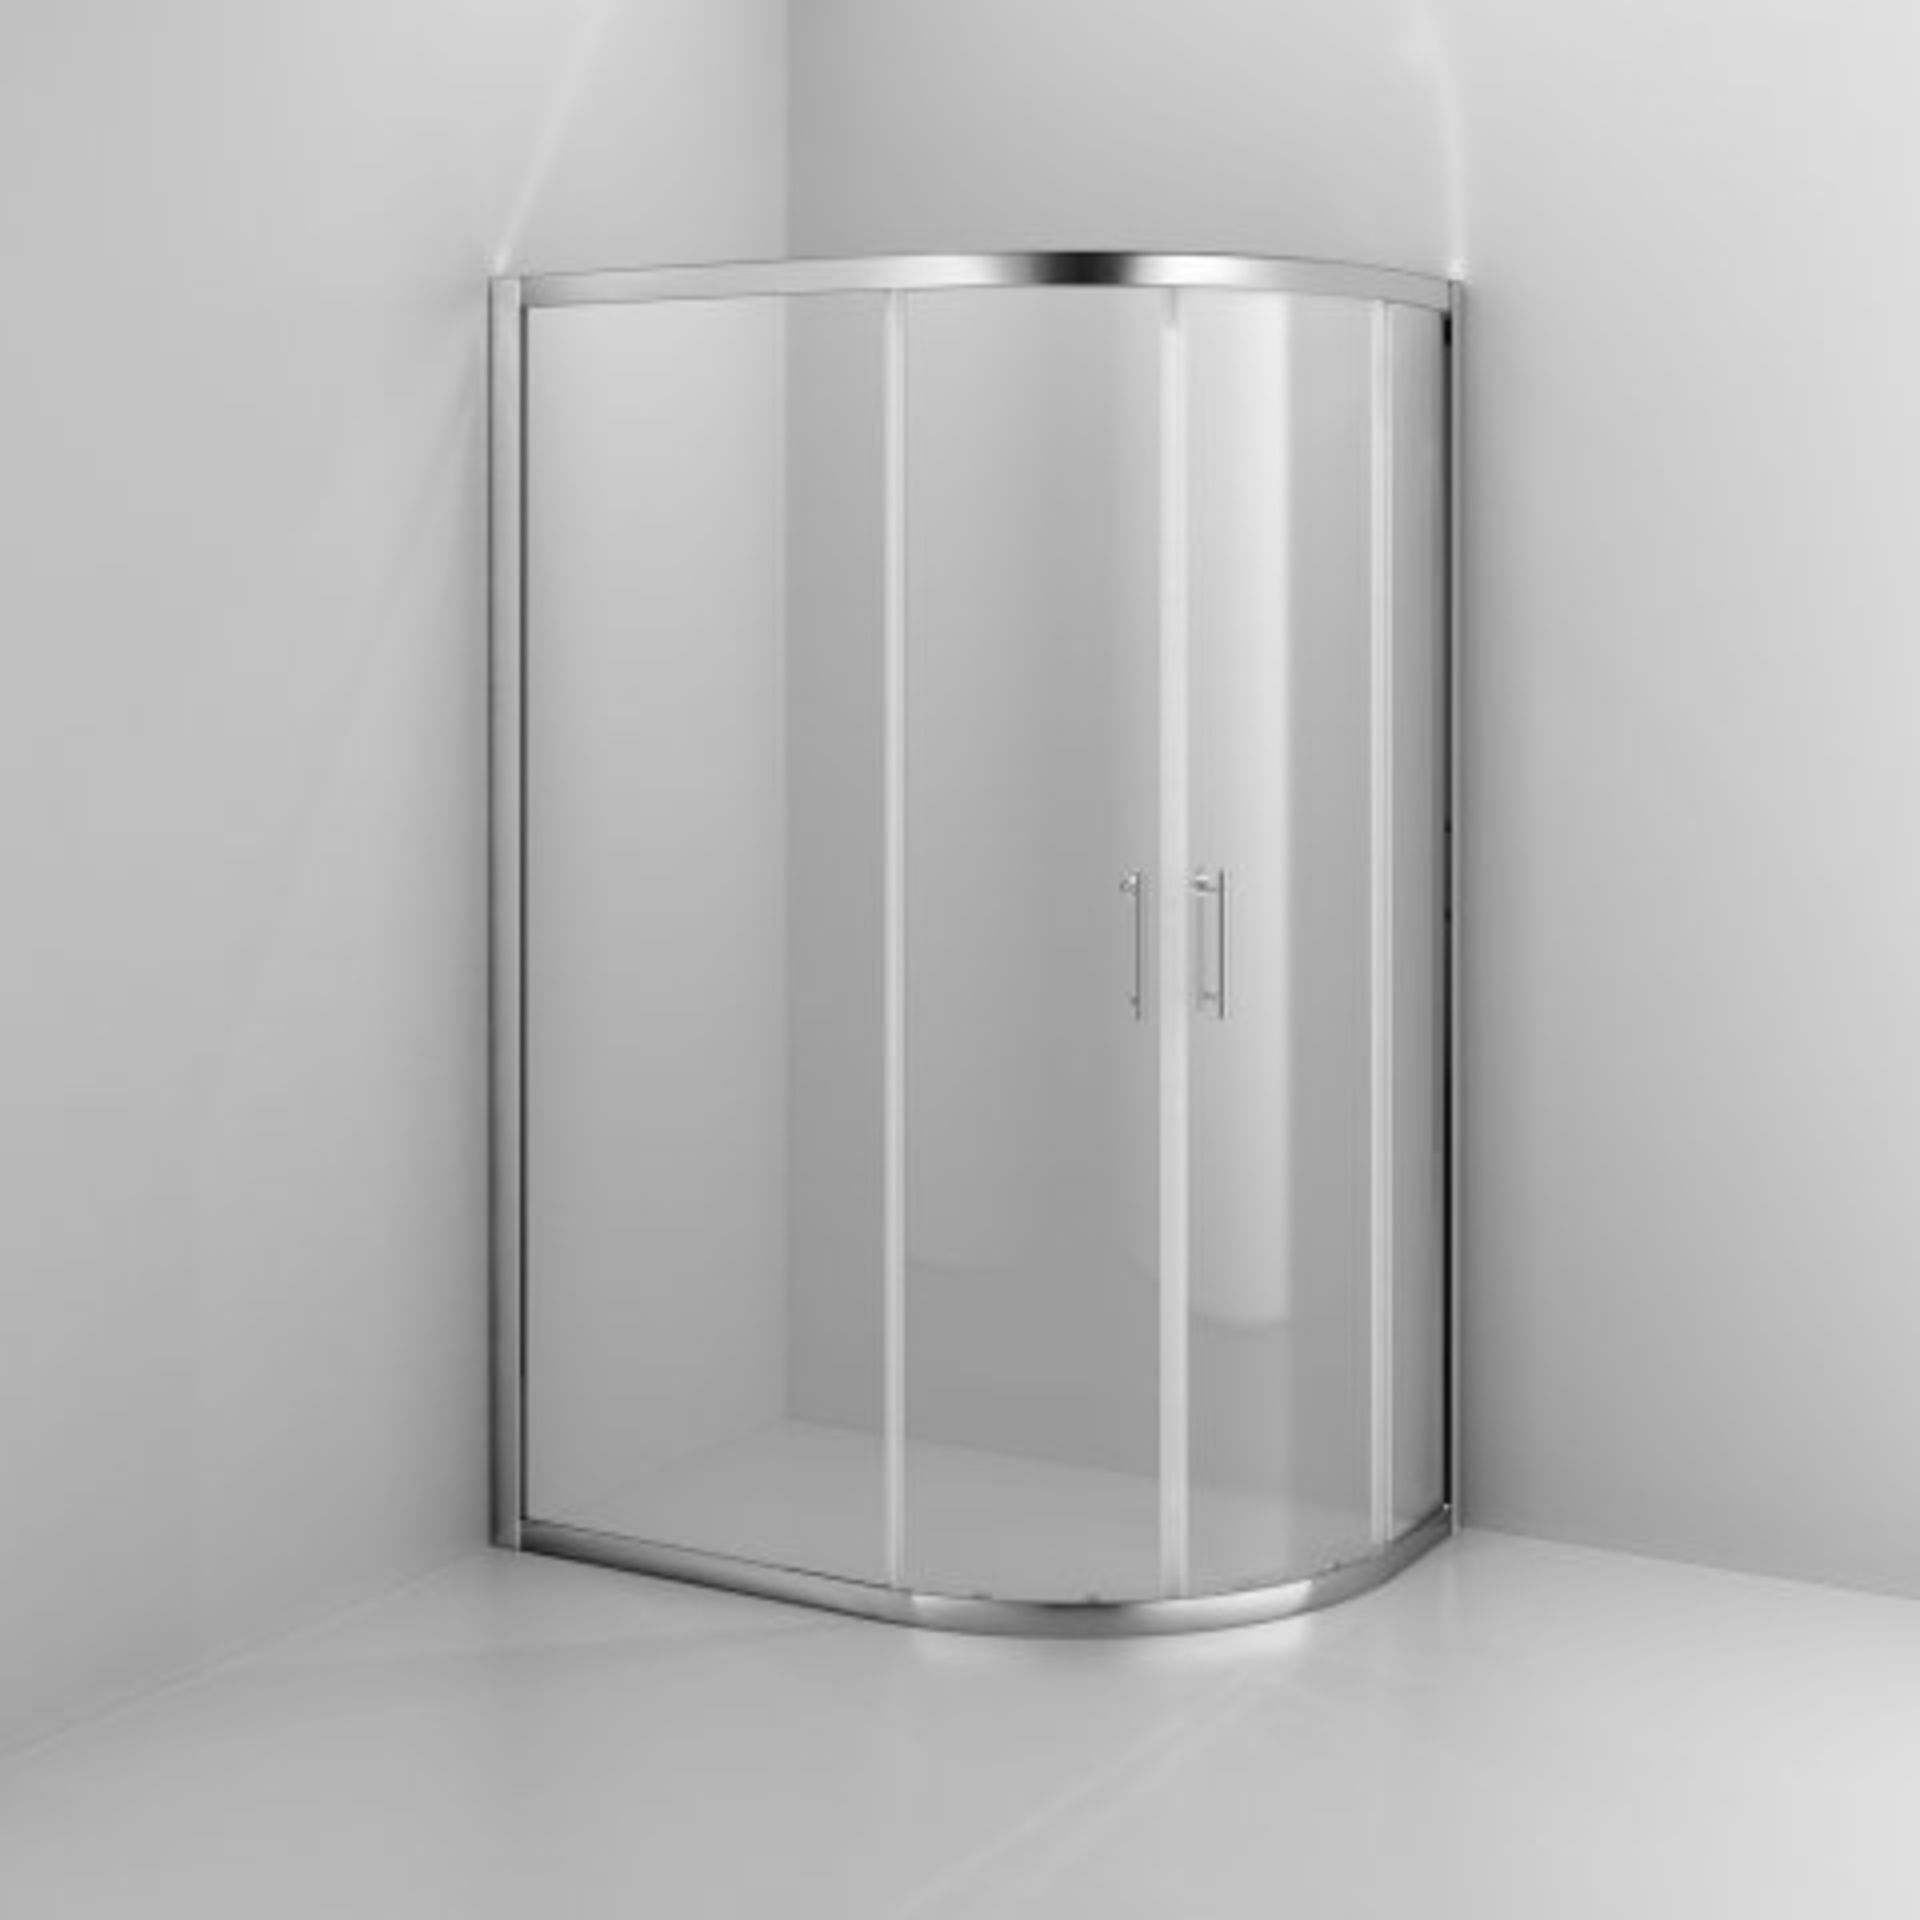 (L99) 800x1000mm - 6mm - Elements Offset Quadrant Shower Enclosure - Reversible RRP £314.99. - Image 6 of 10